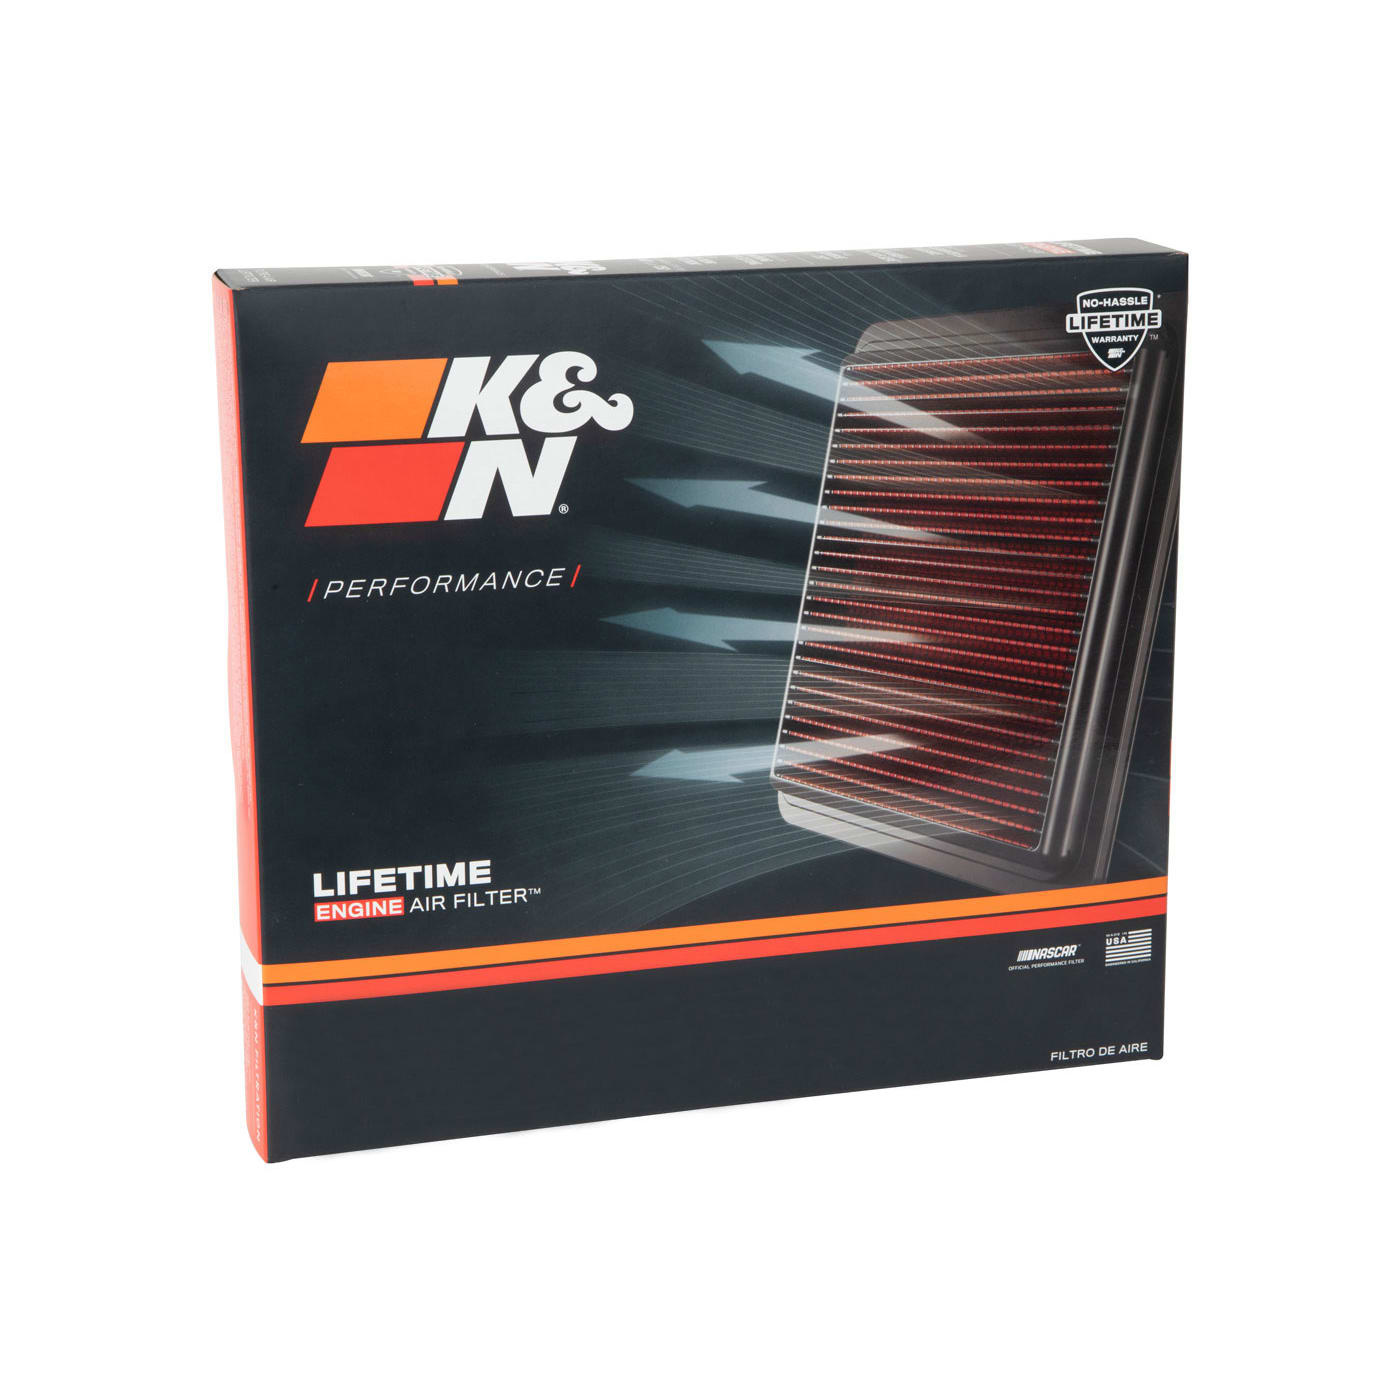 K&n filters filtros de aire deportivos 33-2966 filtro de aire para Chevrolet-Opel 